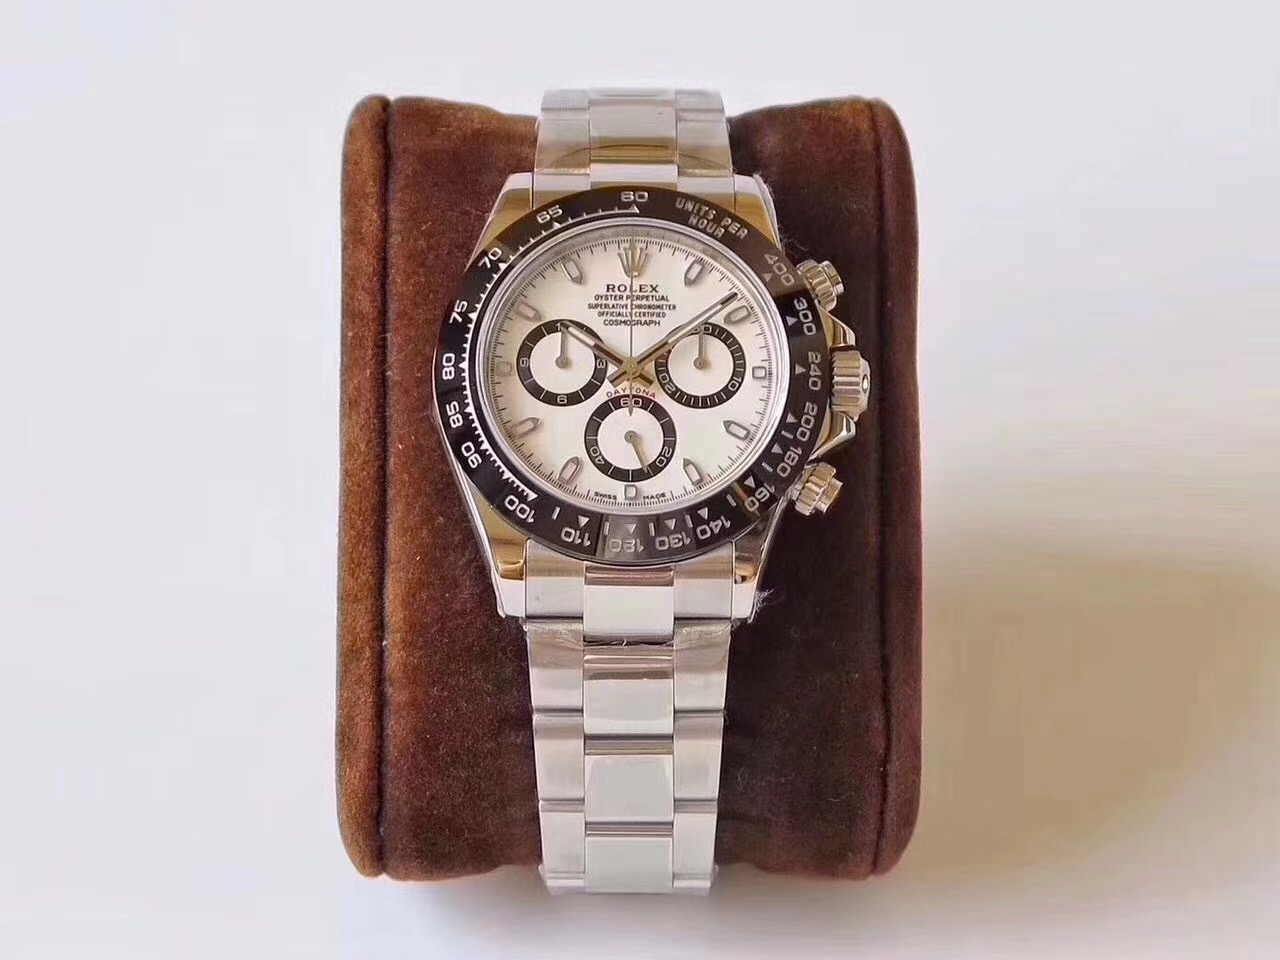 AR Factory Rolex Cosmograph Daytona Series 116500LN-78590 reloj de placa blanca - Haga un click en la imagen para cerrar